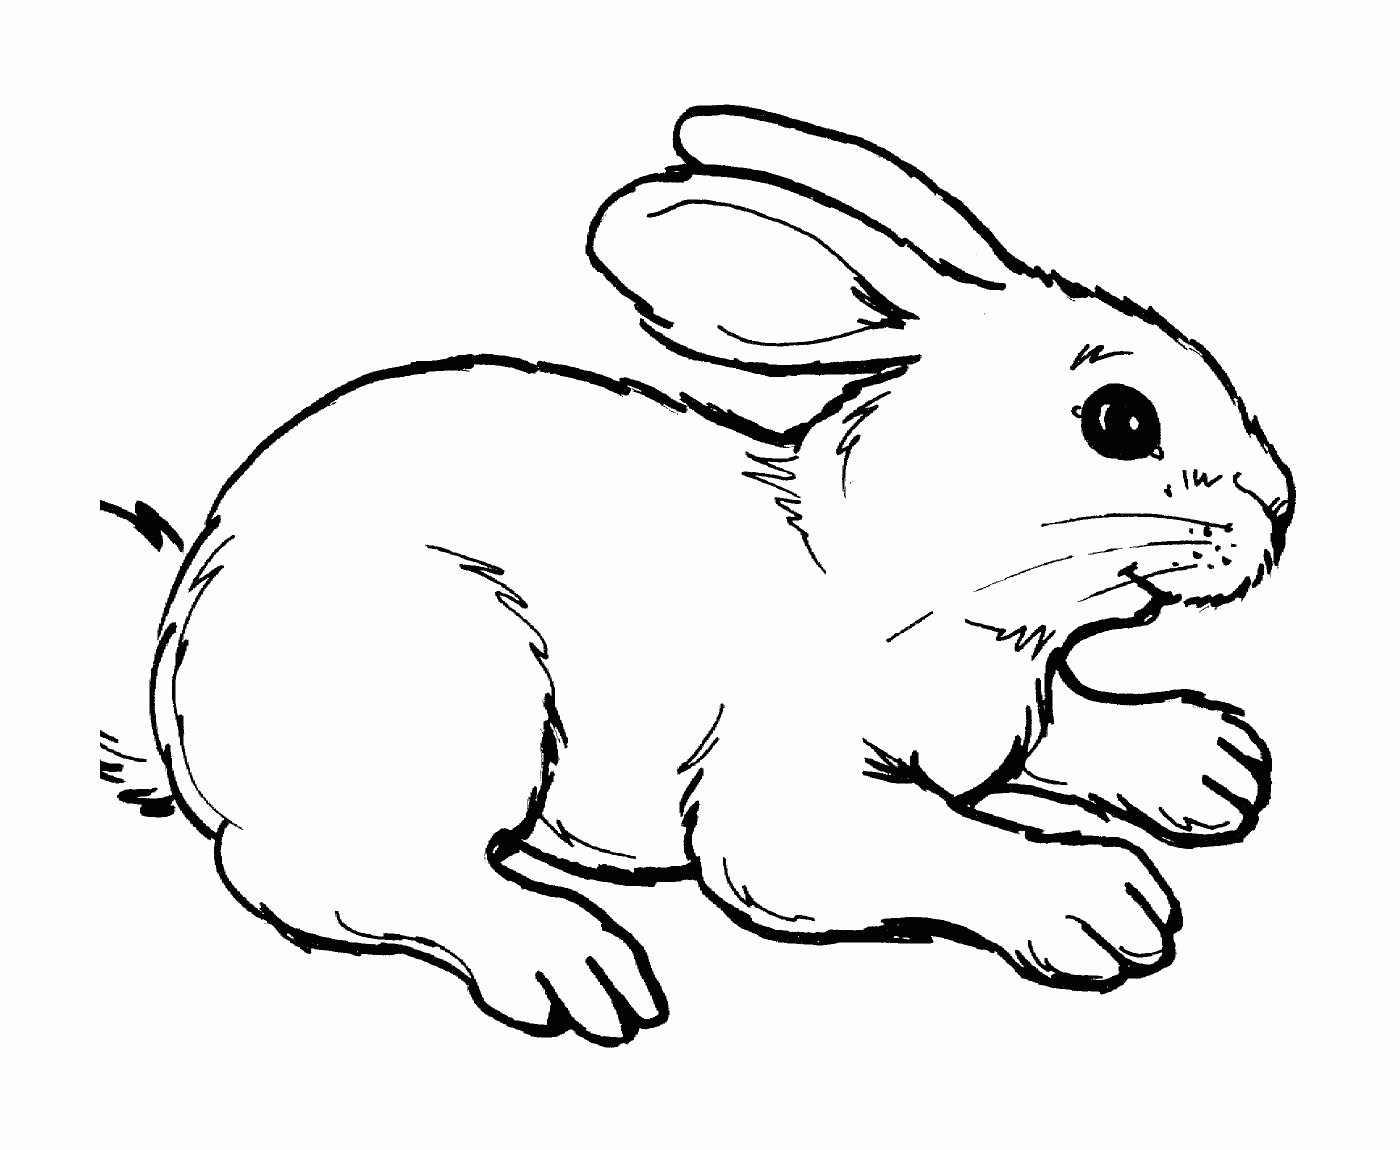  Un conejo realista y lindo 